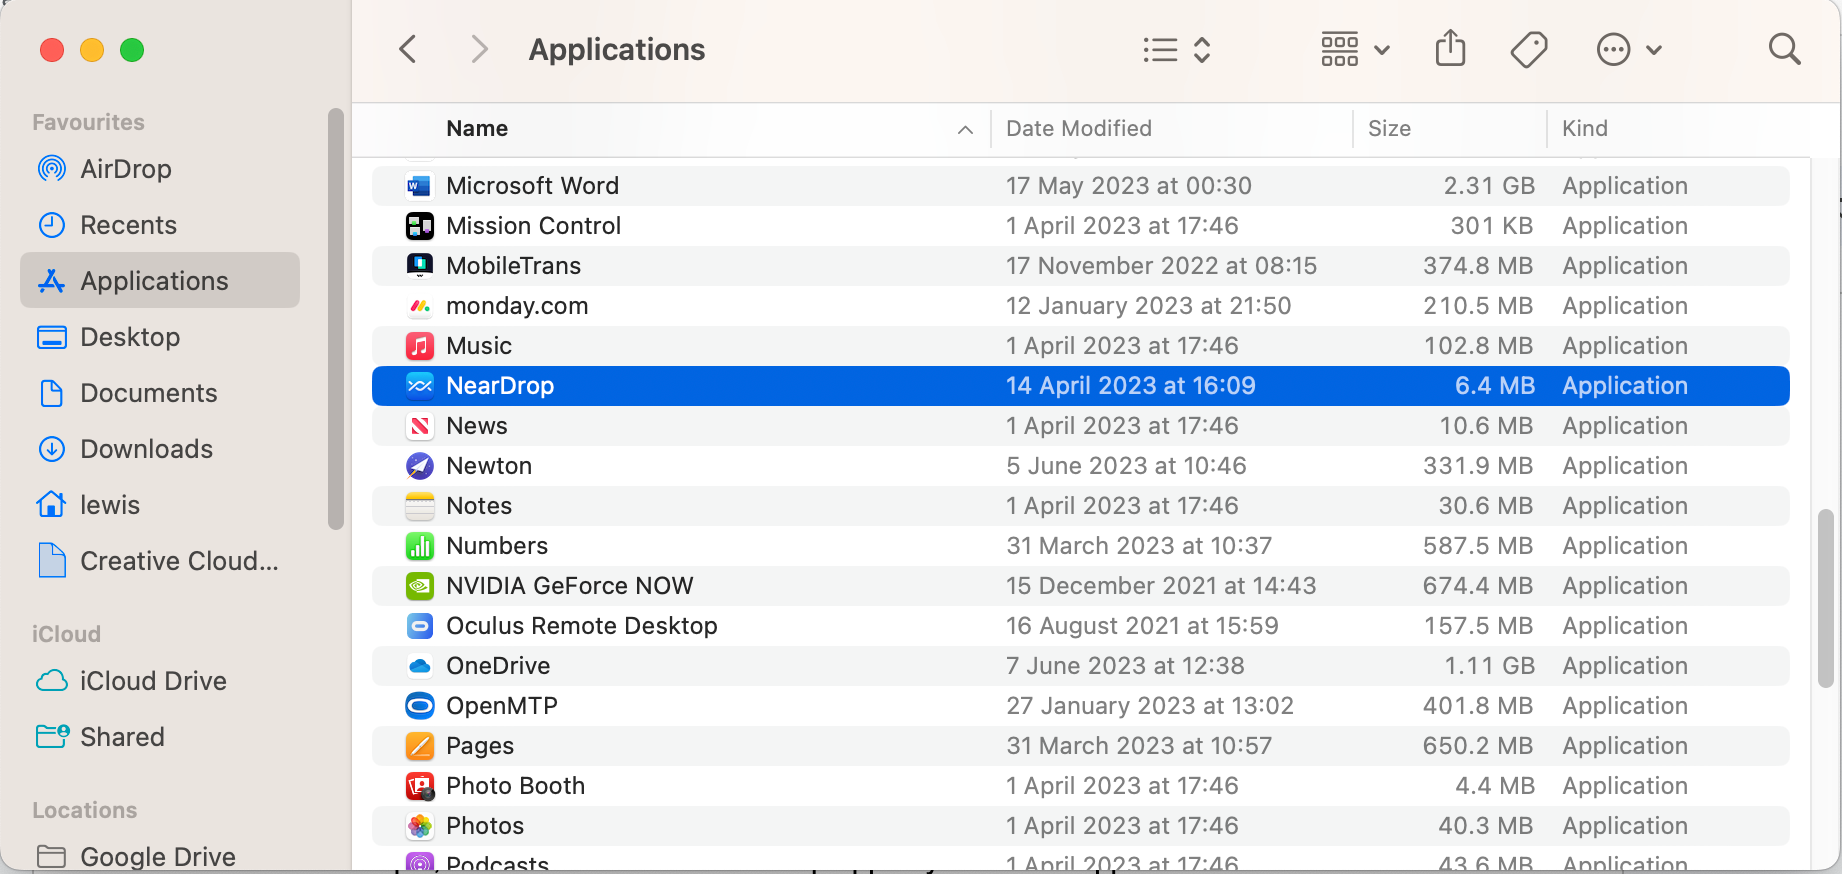 NearDrop app in the Applications menu on Mac